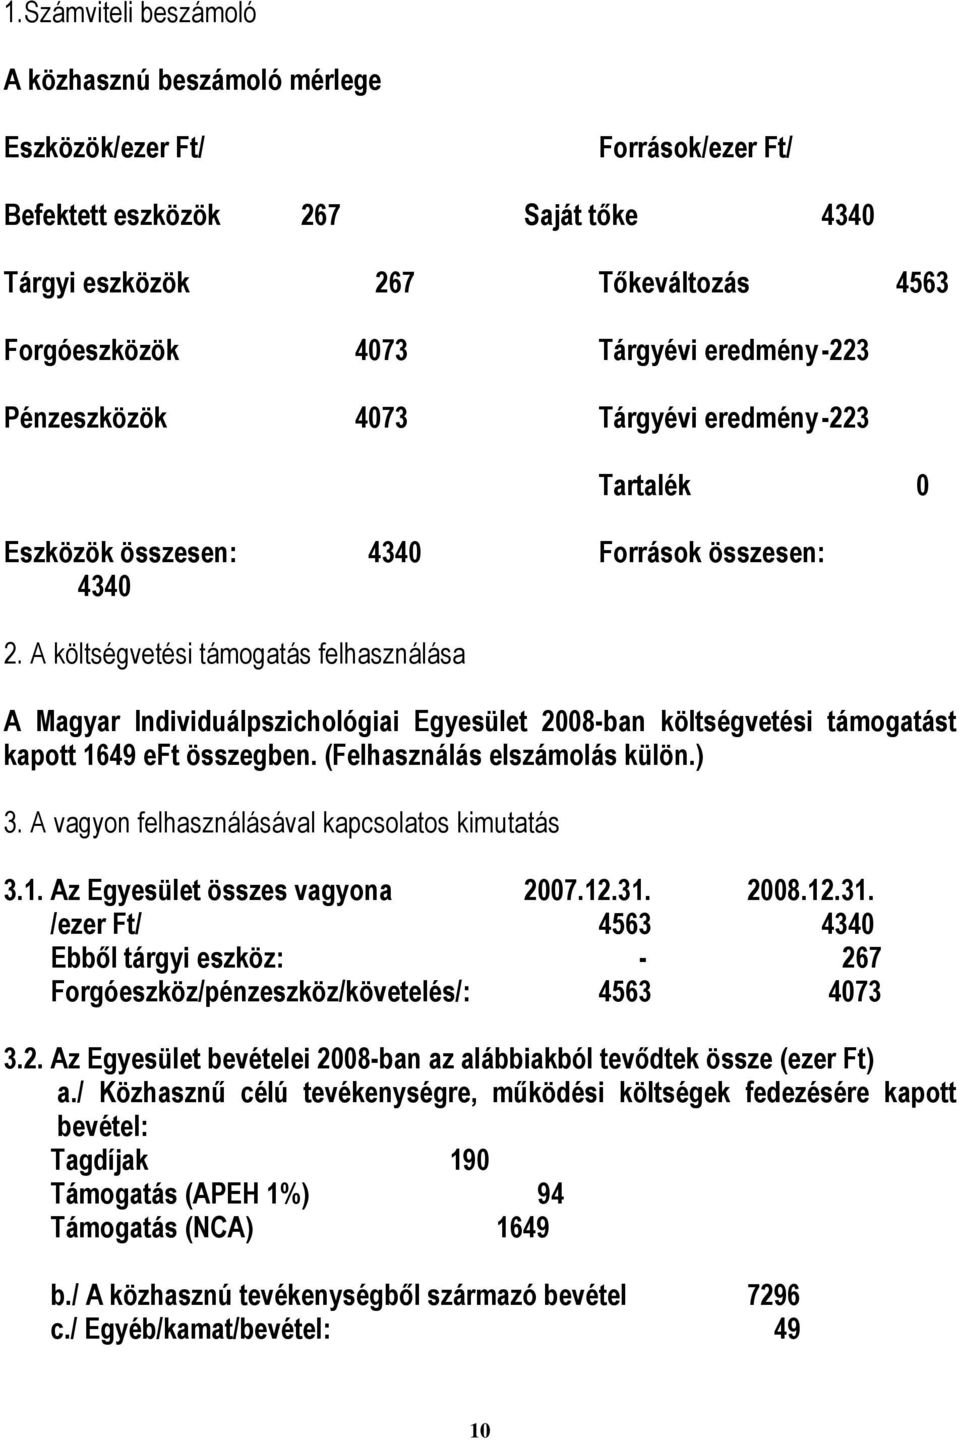 A költségvetési támogatás felhasználása A Magyar Individuálpszichológiai Egyesület 2008-ban költségvetési támogatást kapott 1649 eft összegben. (Felhasználás elszámolás külön.) 3.